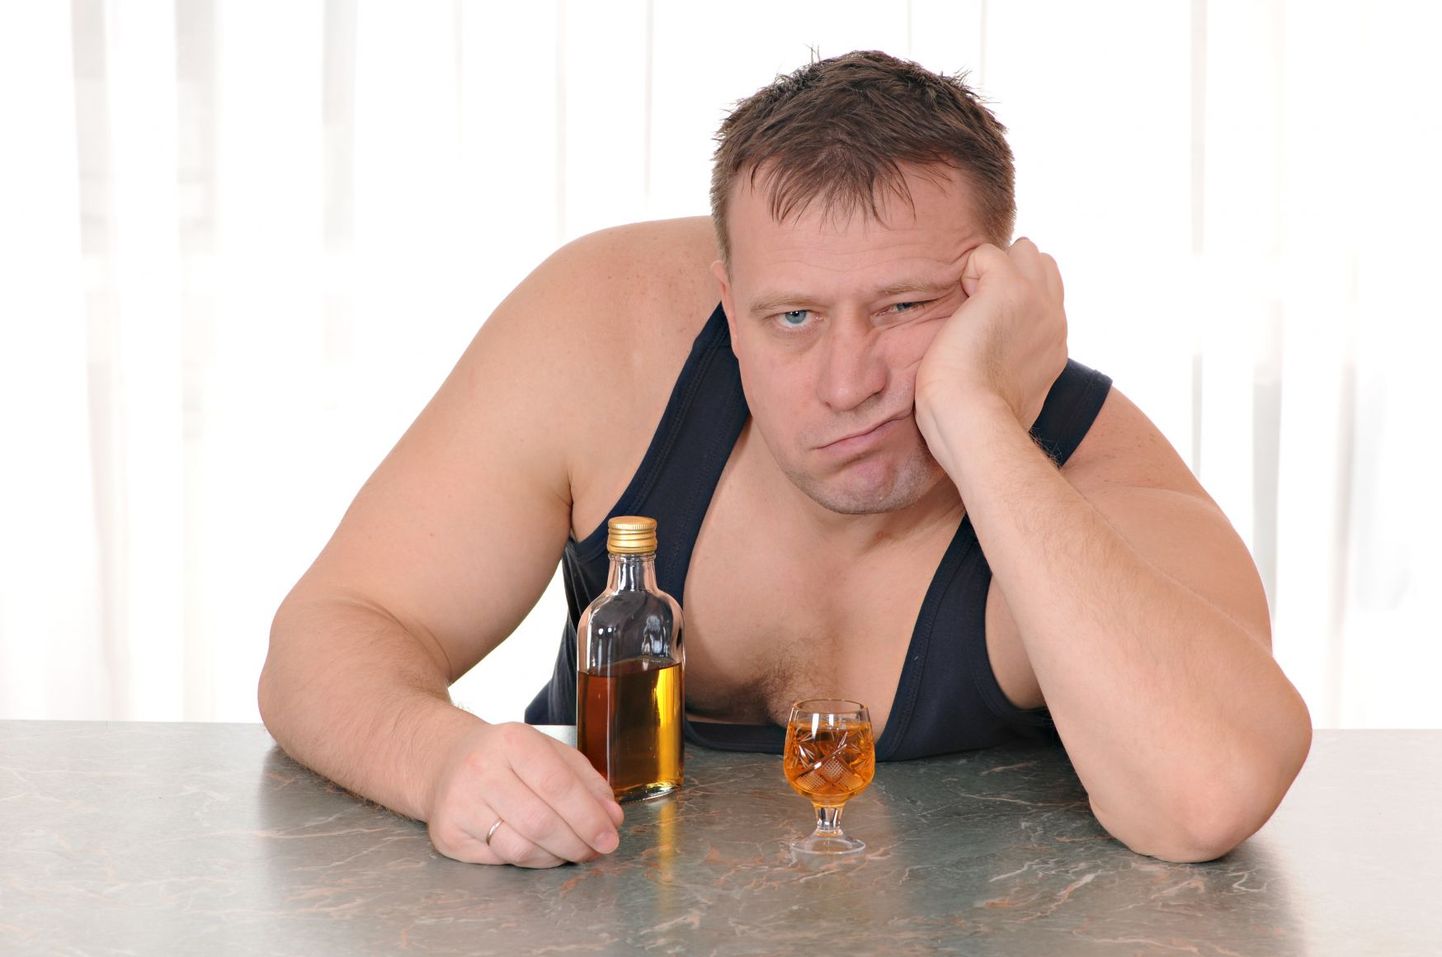 Venemaal võtab maad uskumus, et alkoholismi saab ravida sunnitööga.